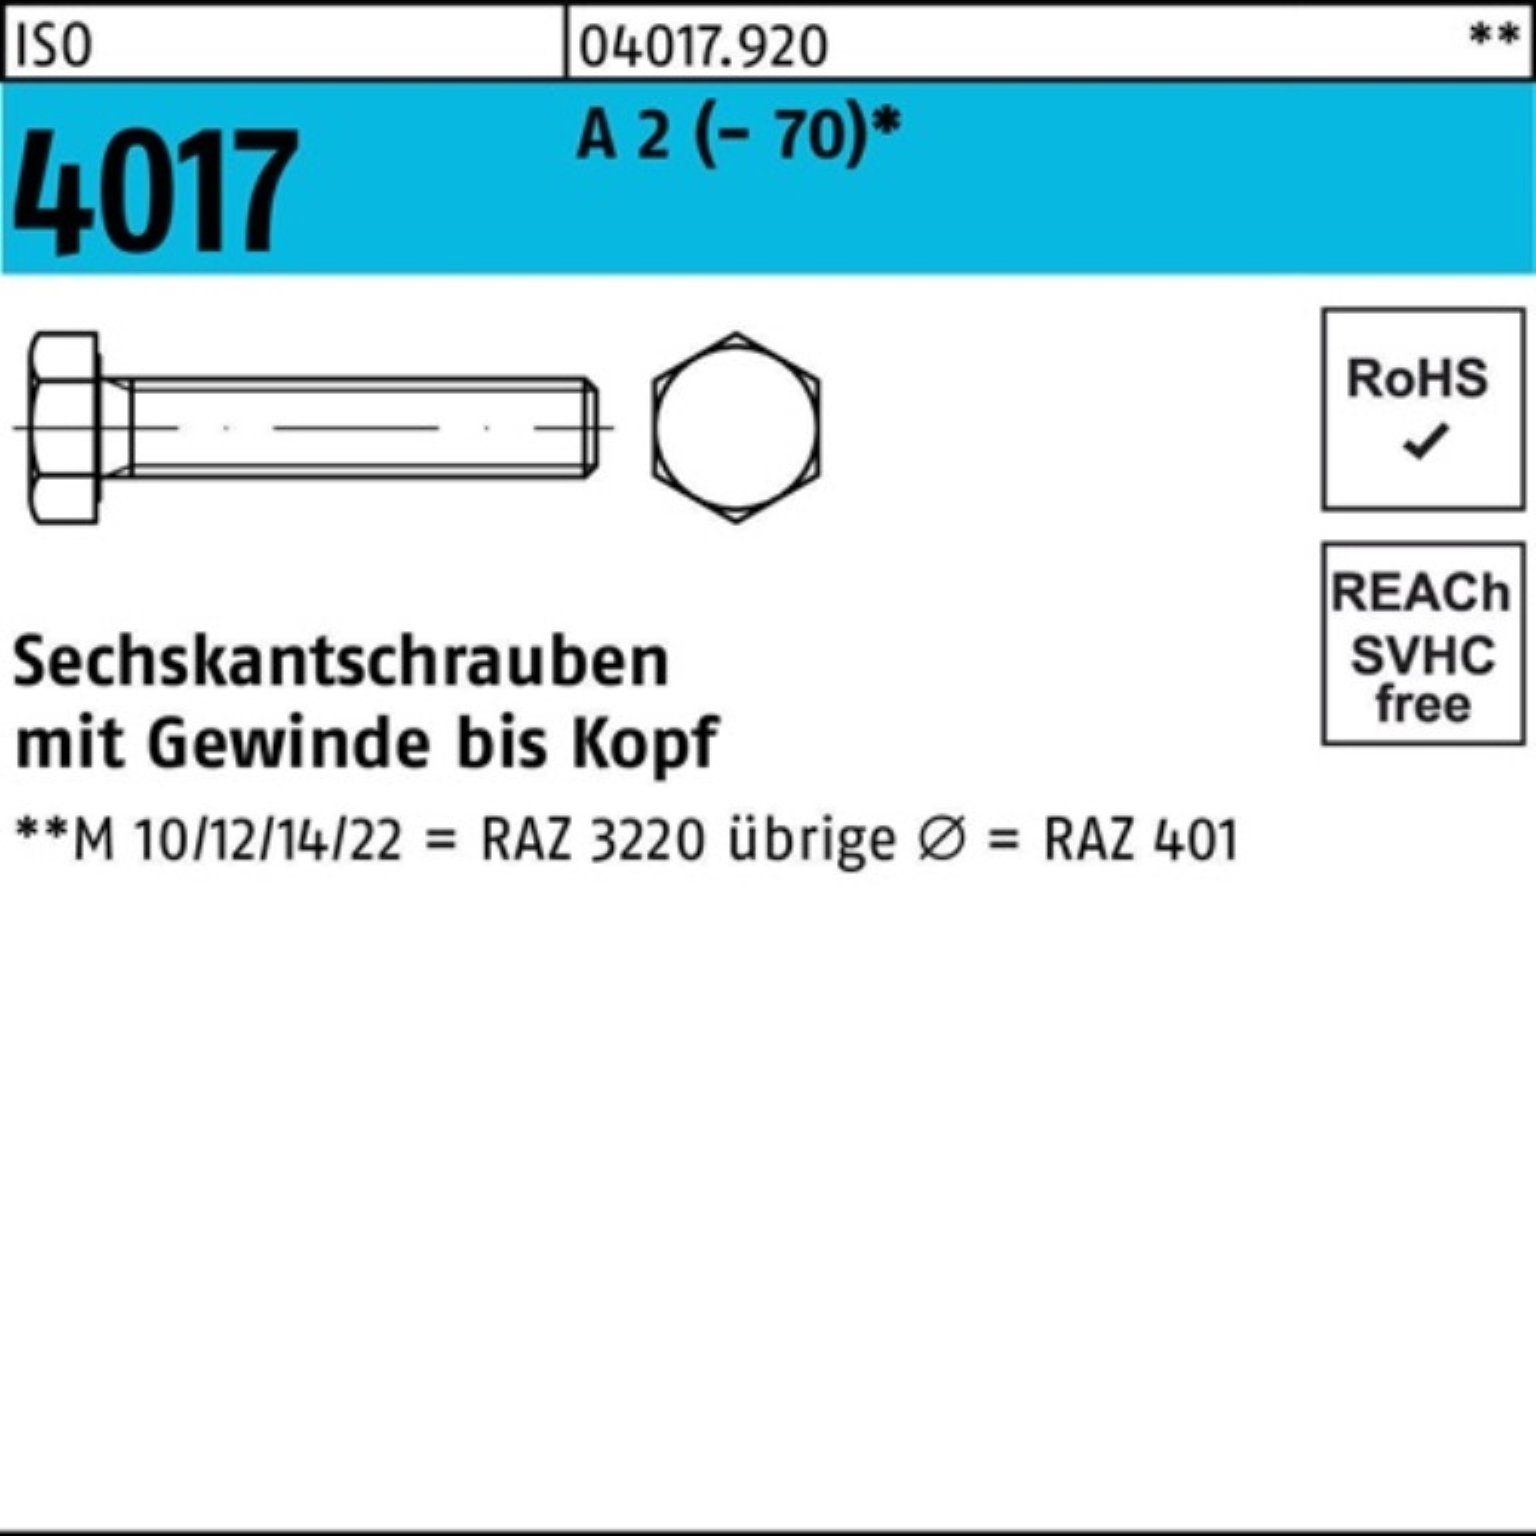 Bufab Sechskantschraube 100er Pack Sechskantschraube ISO 4017 VG M20x 90 A 2 (70) 25 Stück